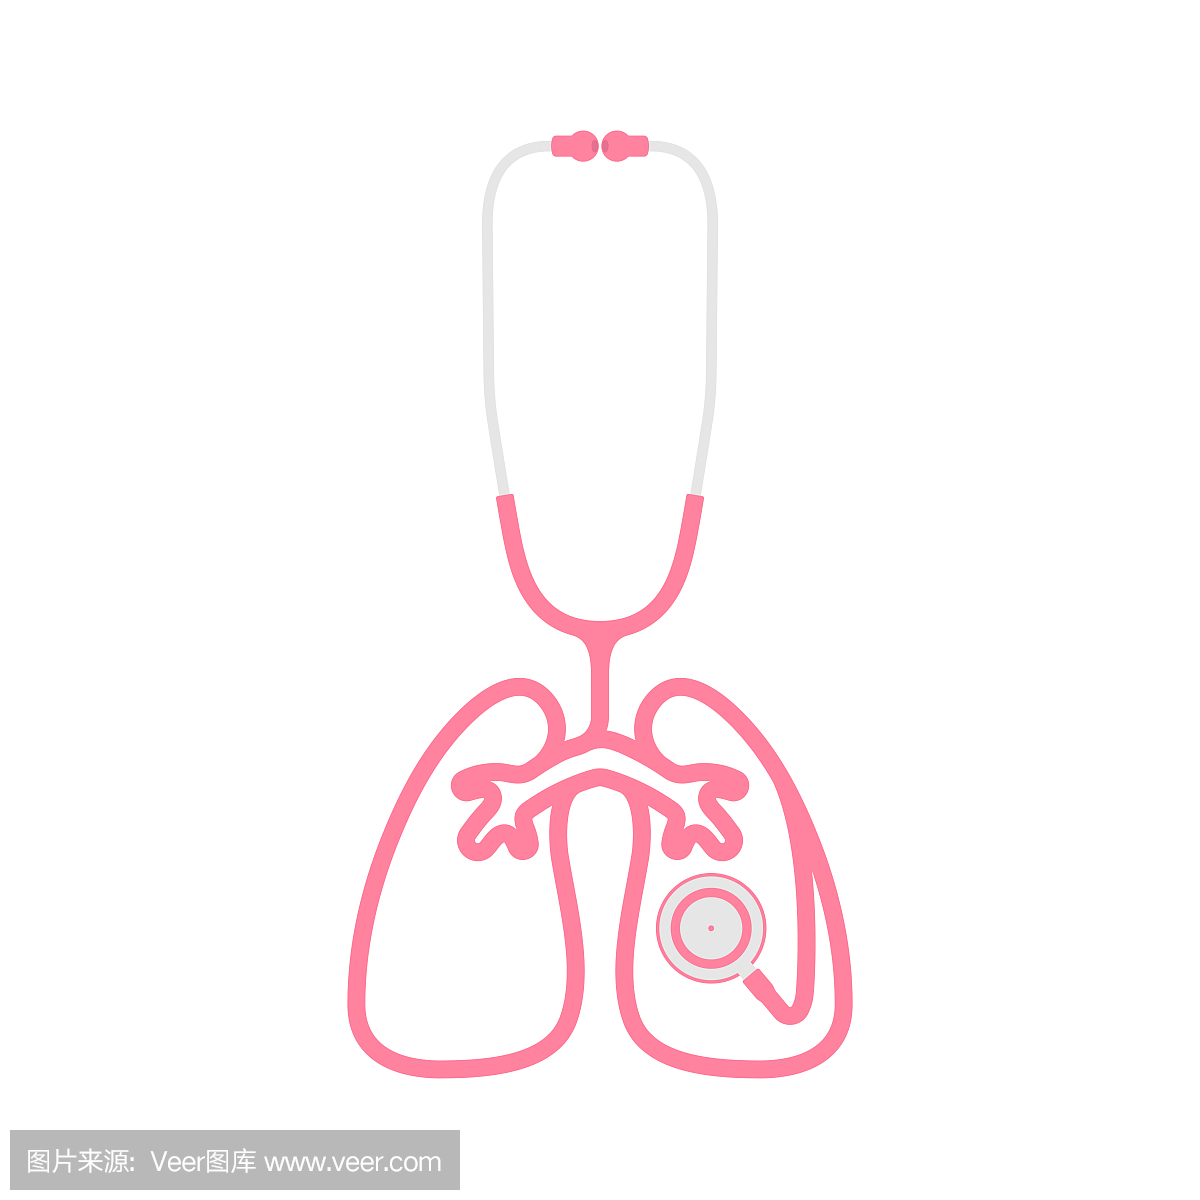 听诊器粉红颜色和肺标志符号形状由电缆平面设